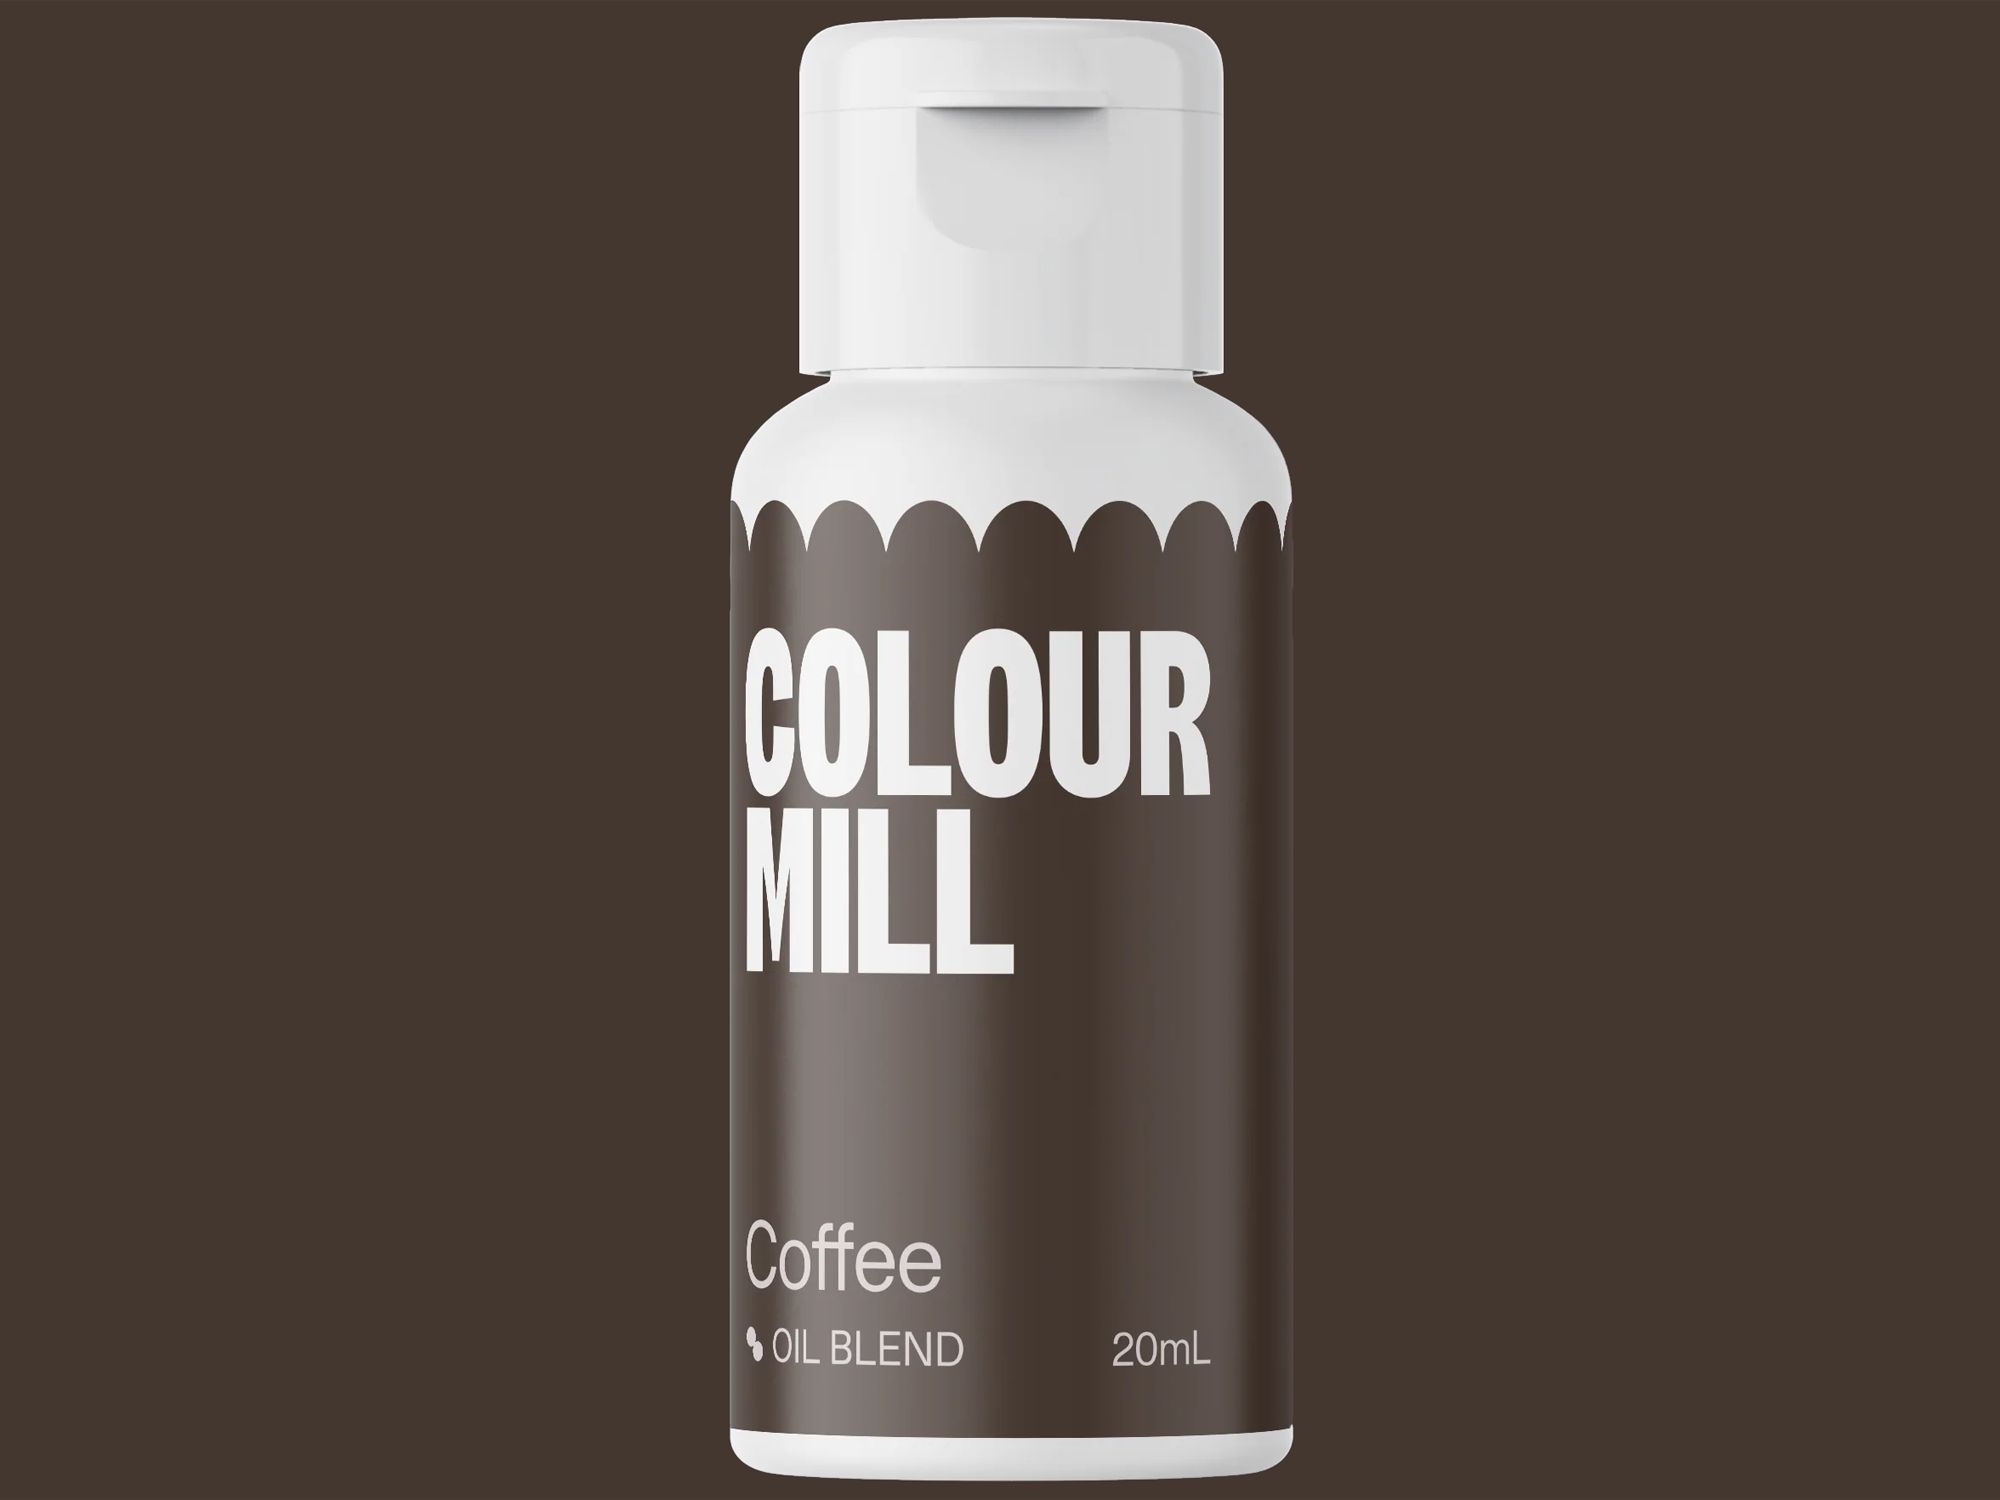 Colour Mill Coffee (Oil Blend) 20ml